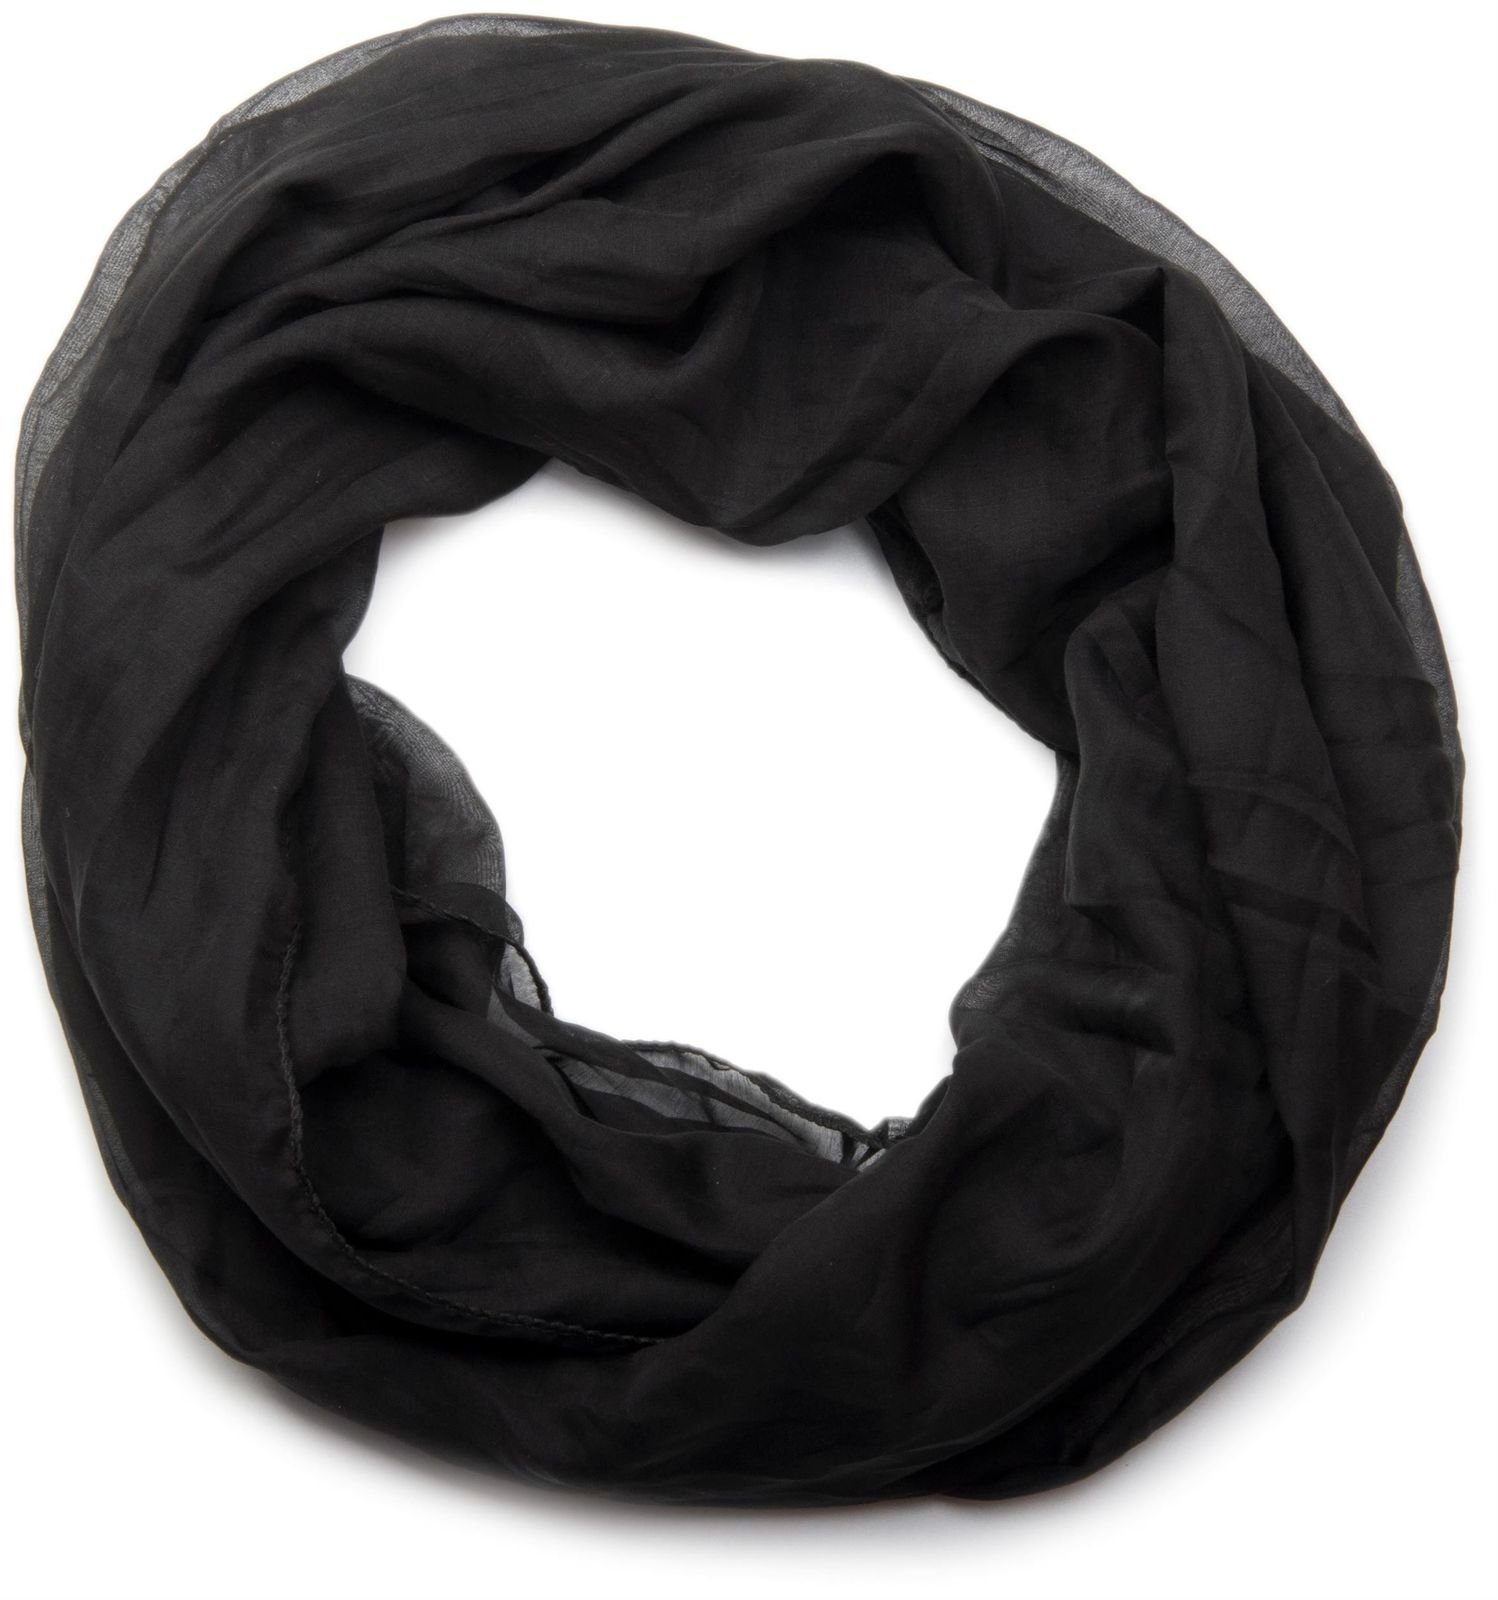 Schwarze Schals für Damen online kaufen | OTTO